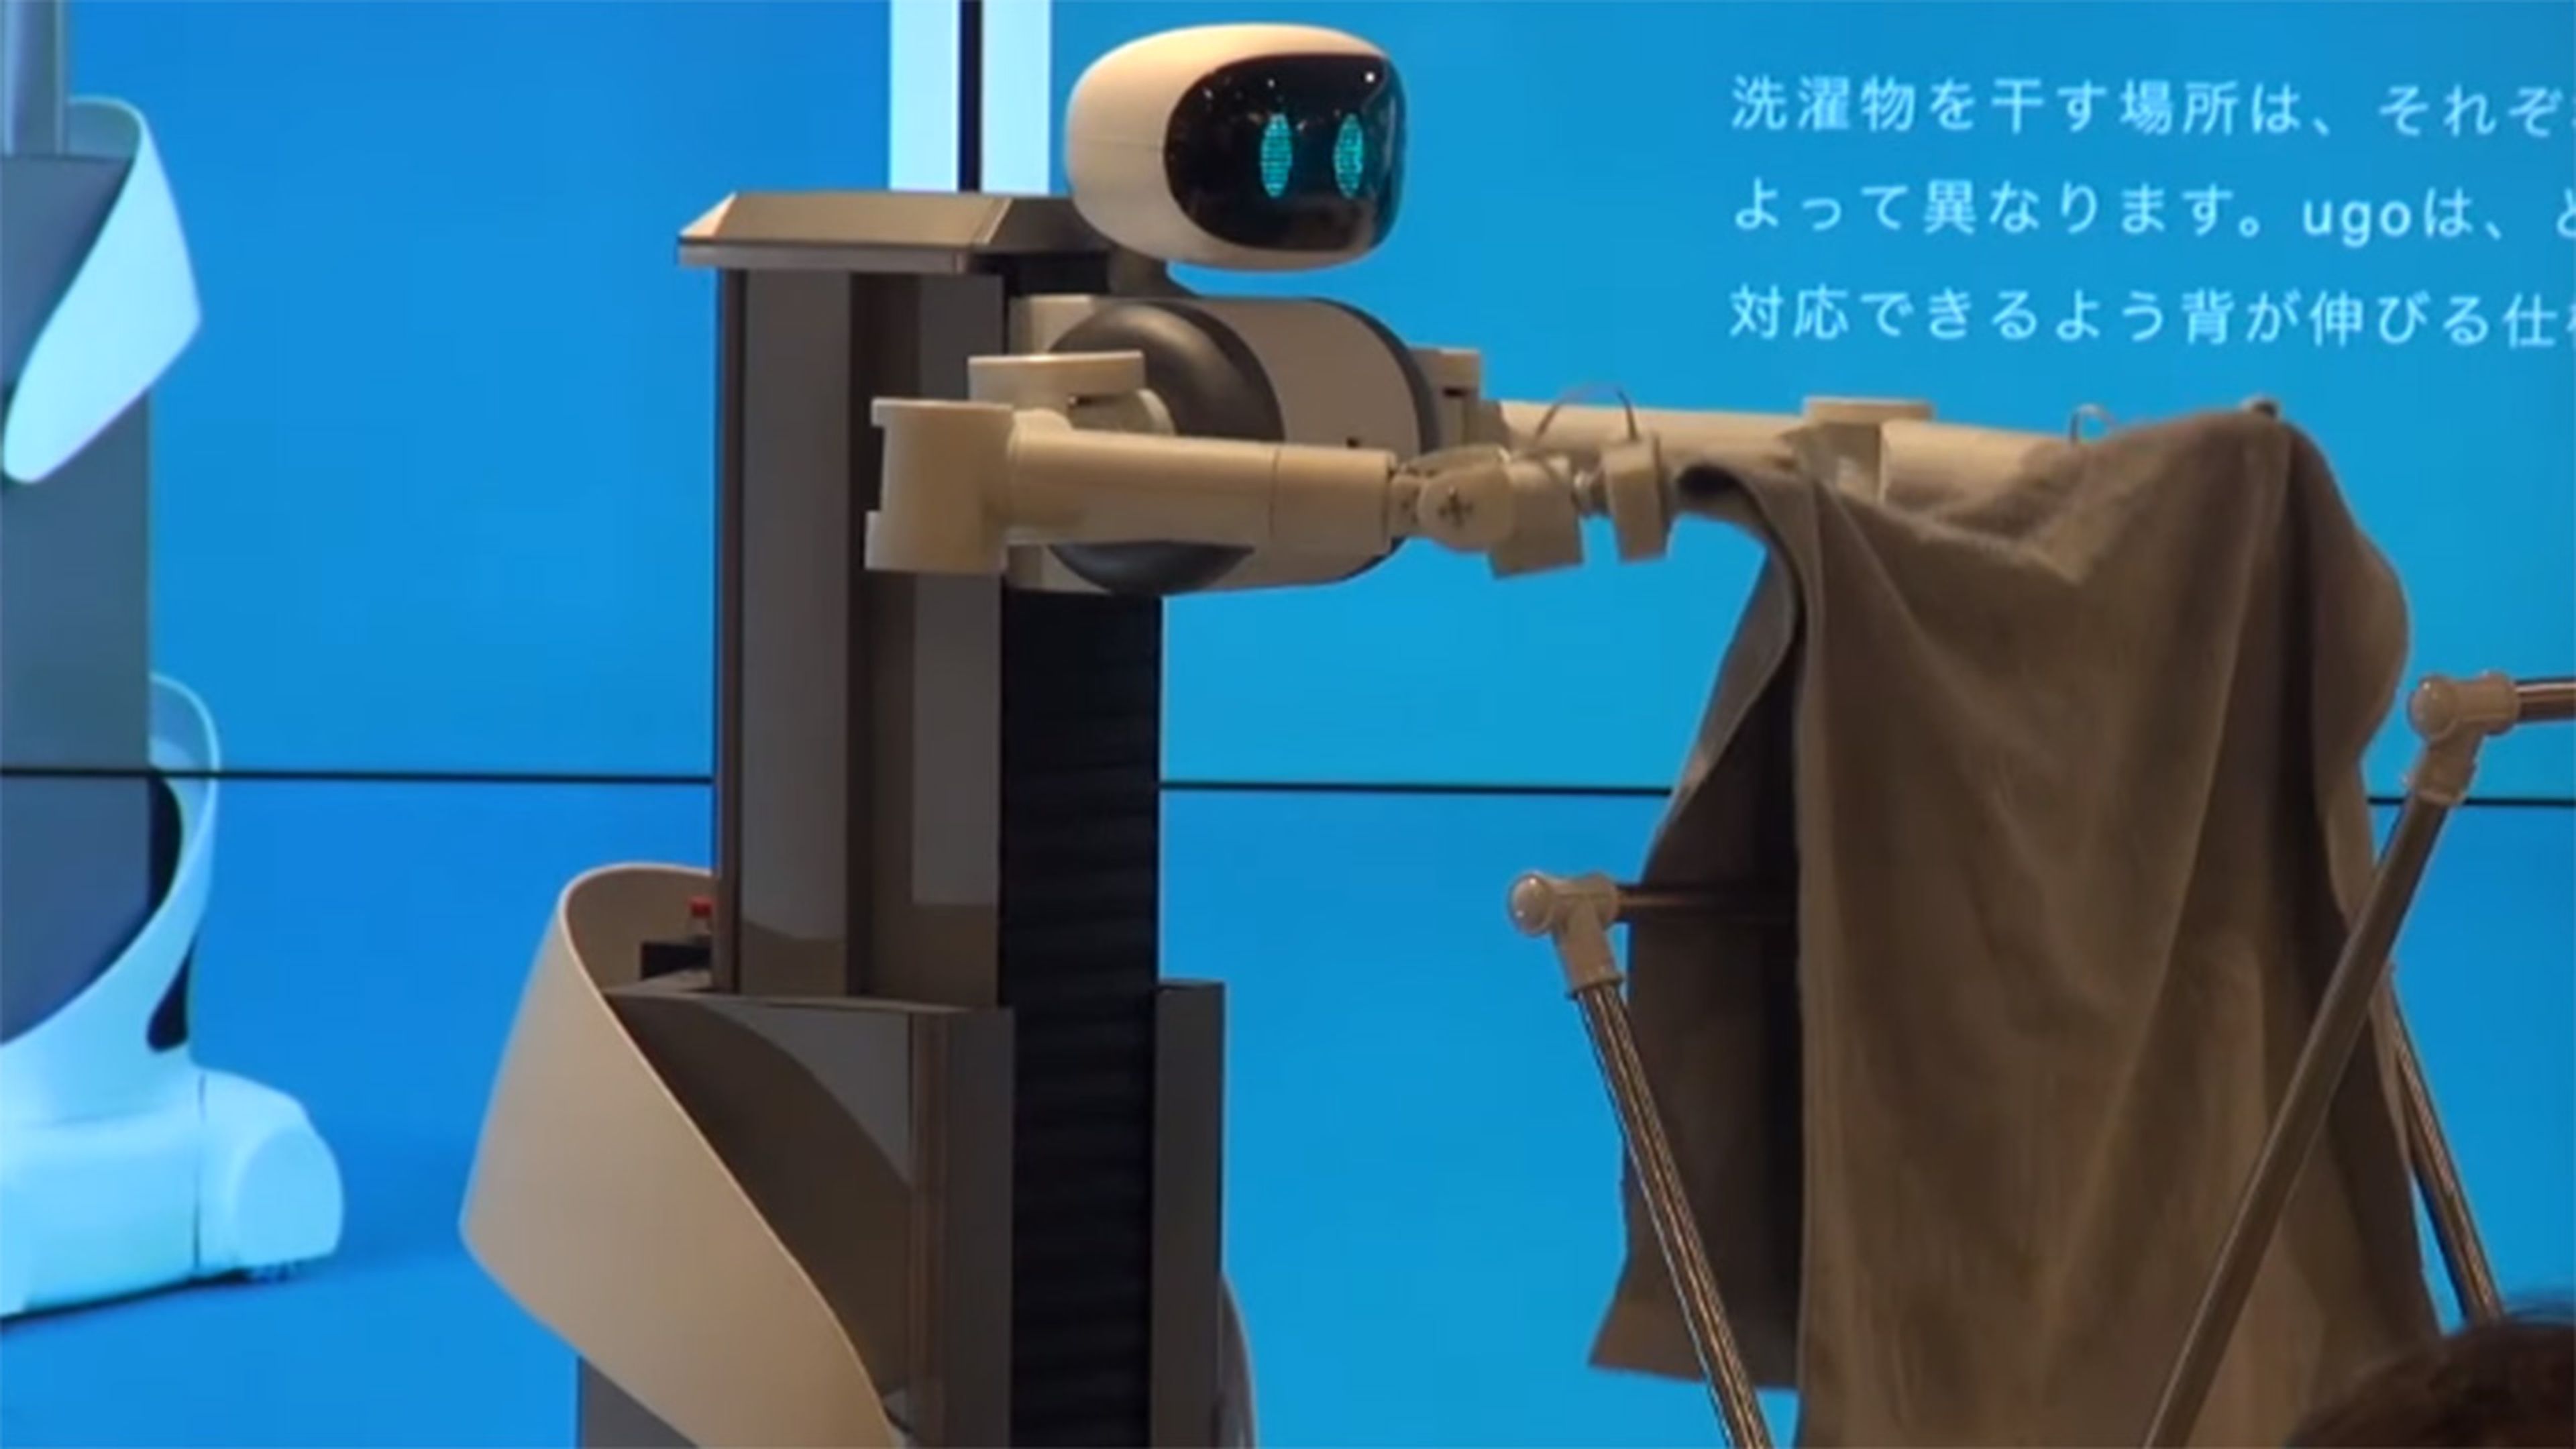 Robot que dobla la ropa